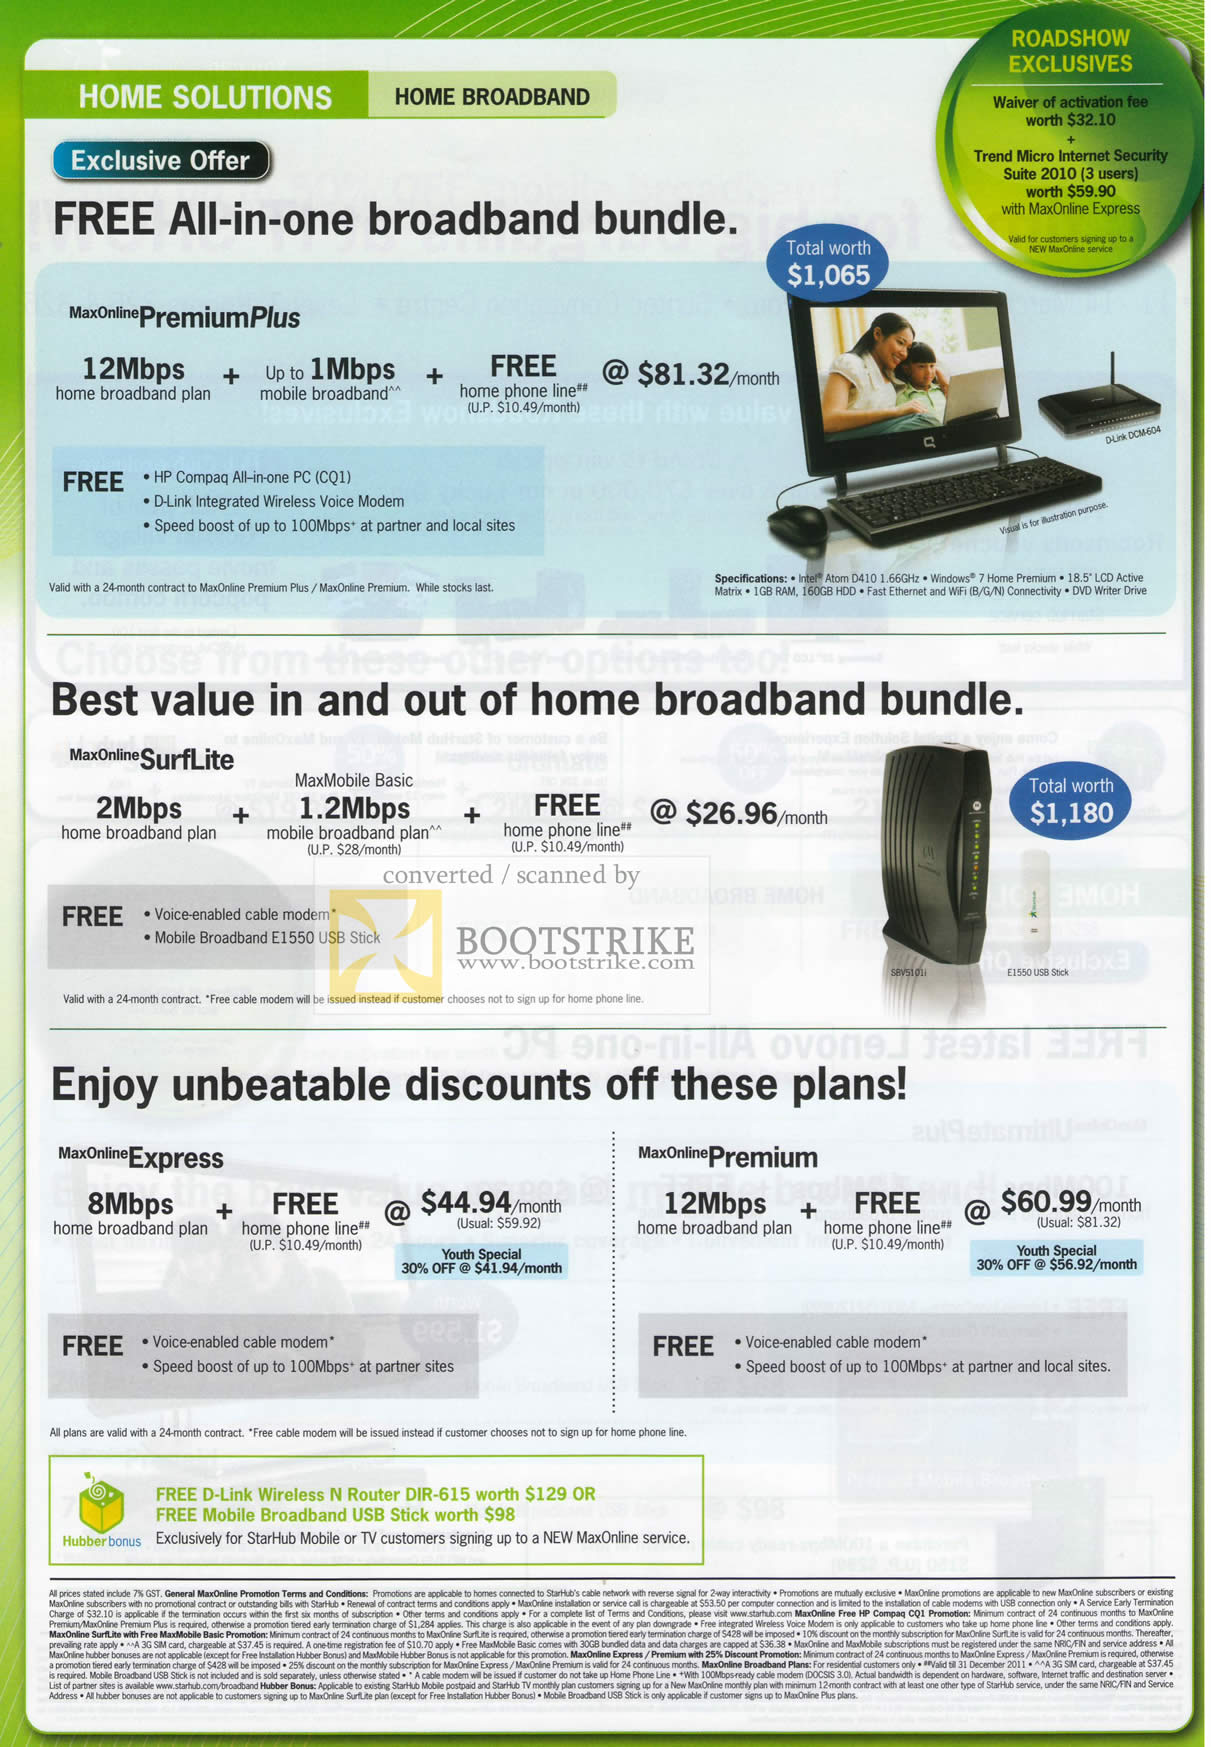 IT Show 2010 price list image brochure of Starhub Broadband Maxonline Premium Express HP Compaq All In One PC CQ1 D Link